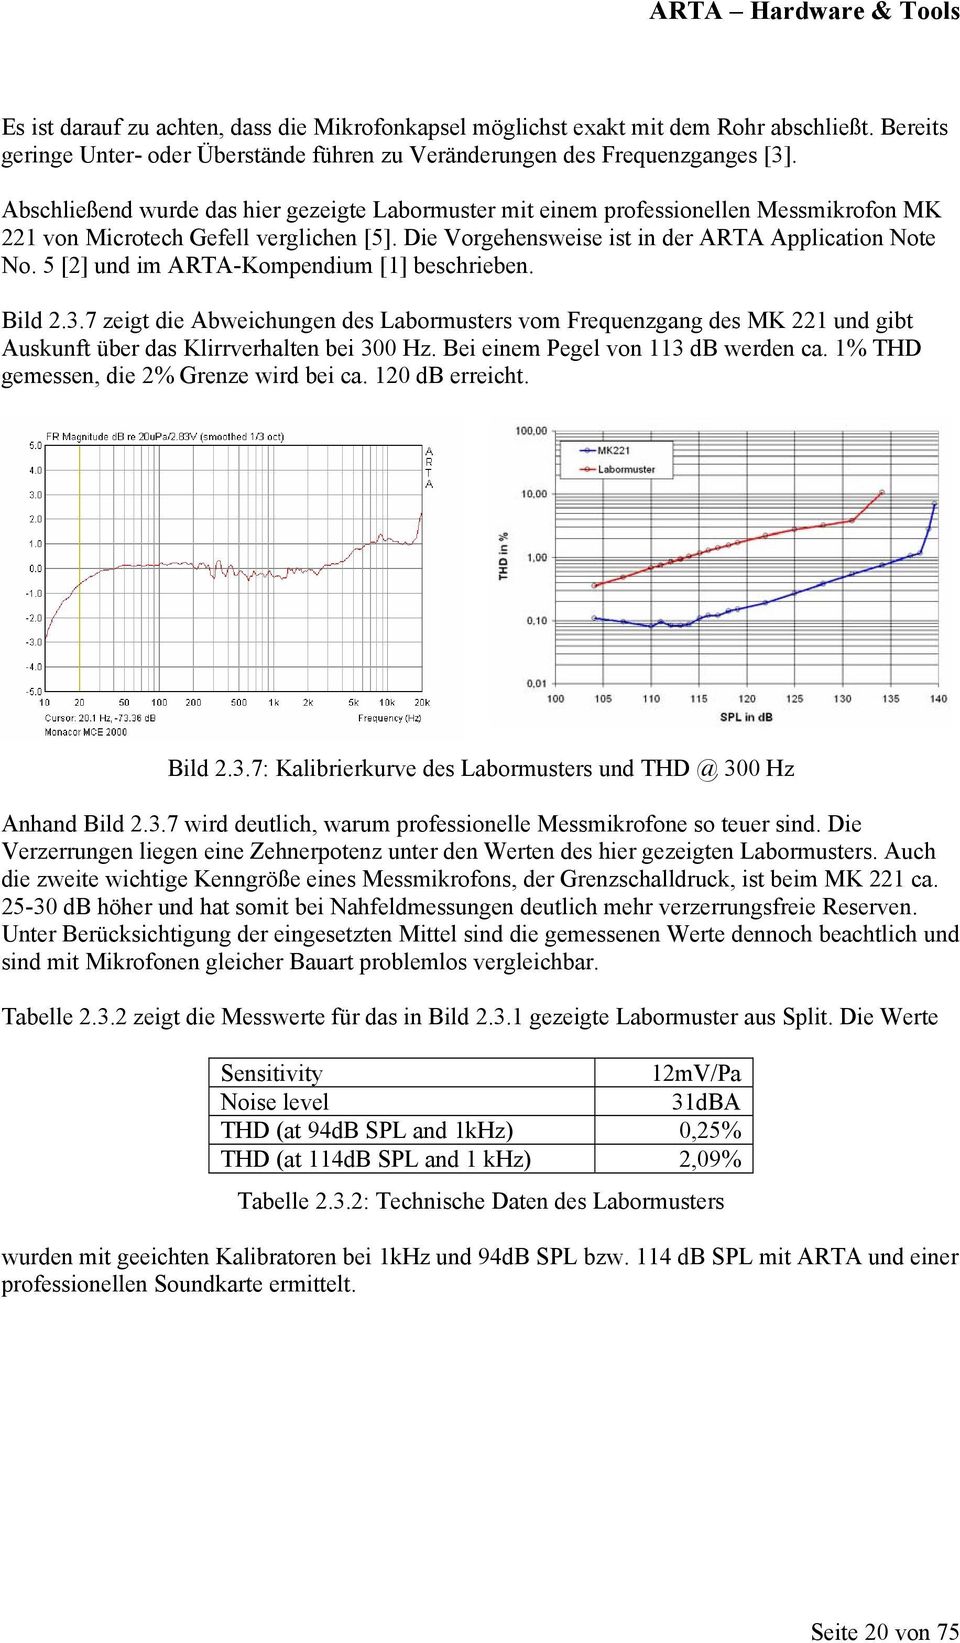 5 [2] und im ARTA-Kompendium [1] beschrieben. Bild 2.3.7 zeigt die Abweichungen des Labormusters vom Frequenzgang des MK 221 und gibt Auskunft über das Klirrverhalten bei 300 Hz.